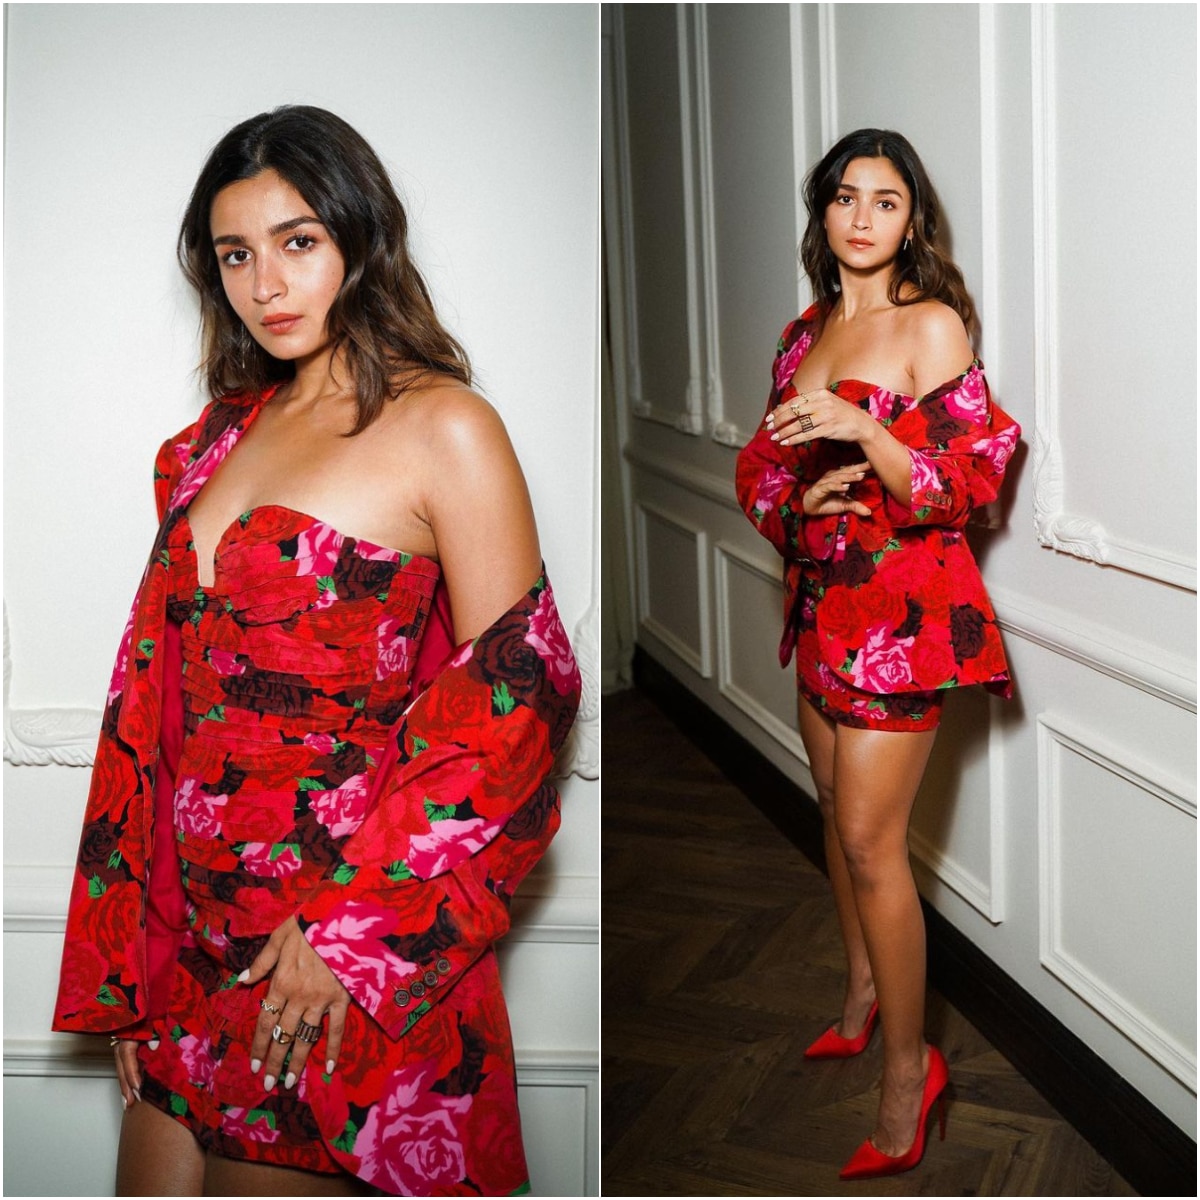 Alia Bhatt in a Cute Floral Dress | Celebrity Fashion | Bolllywood on a  Budget - Myntra Studio - YouTube